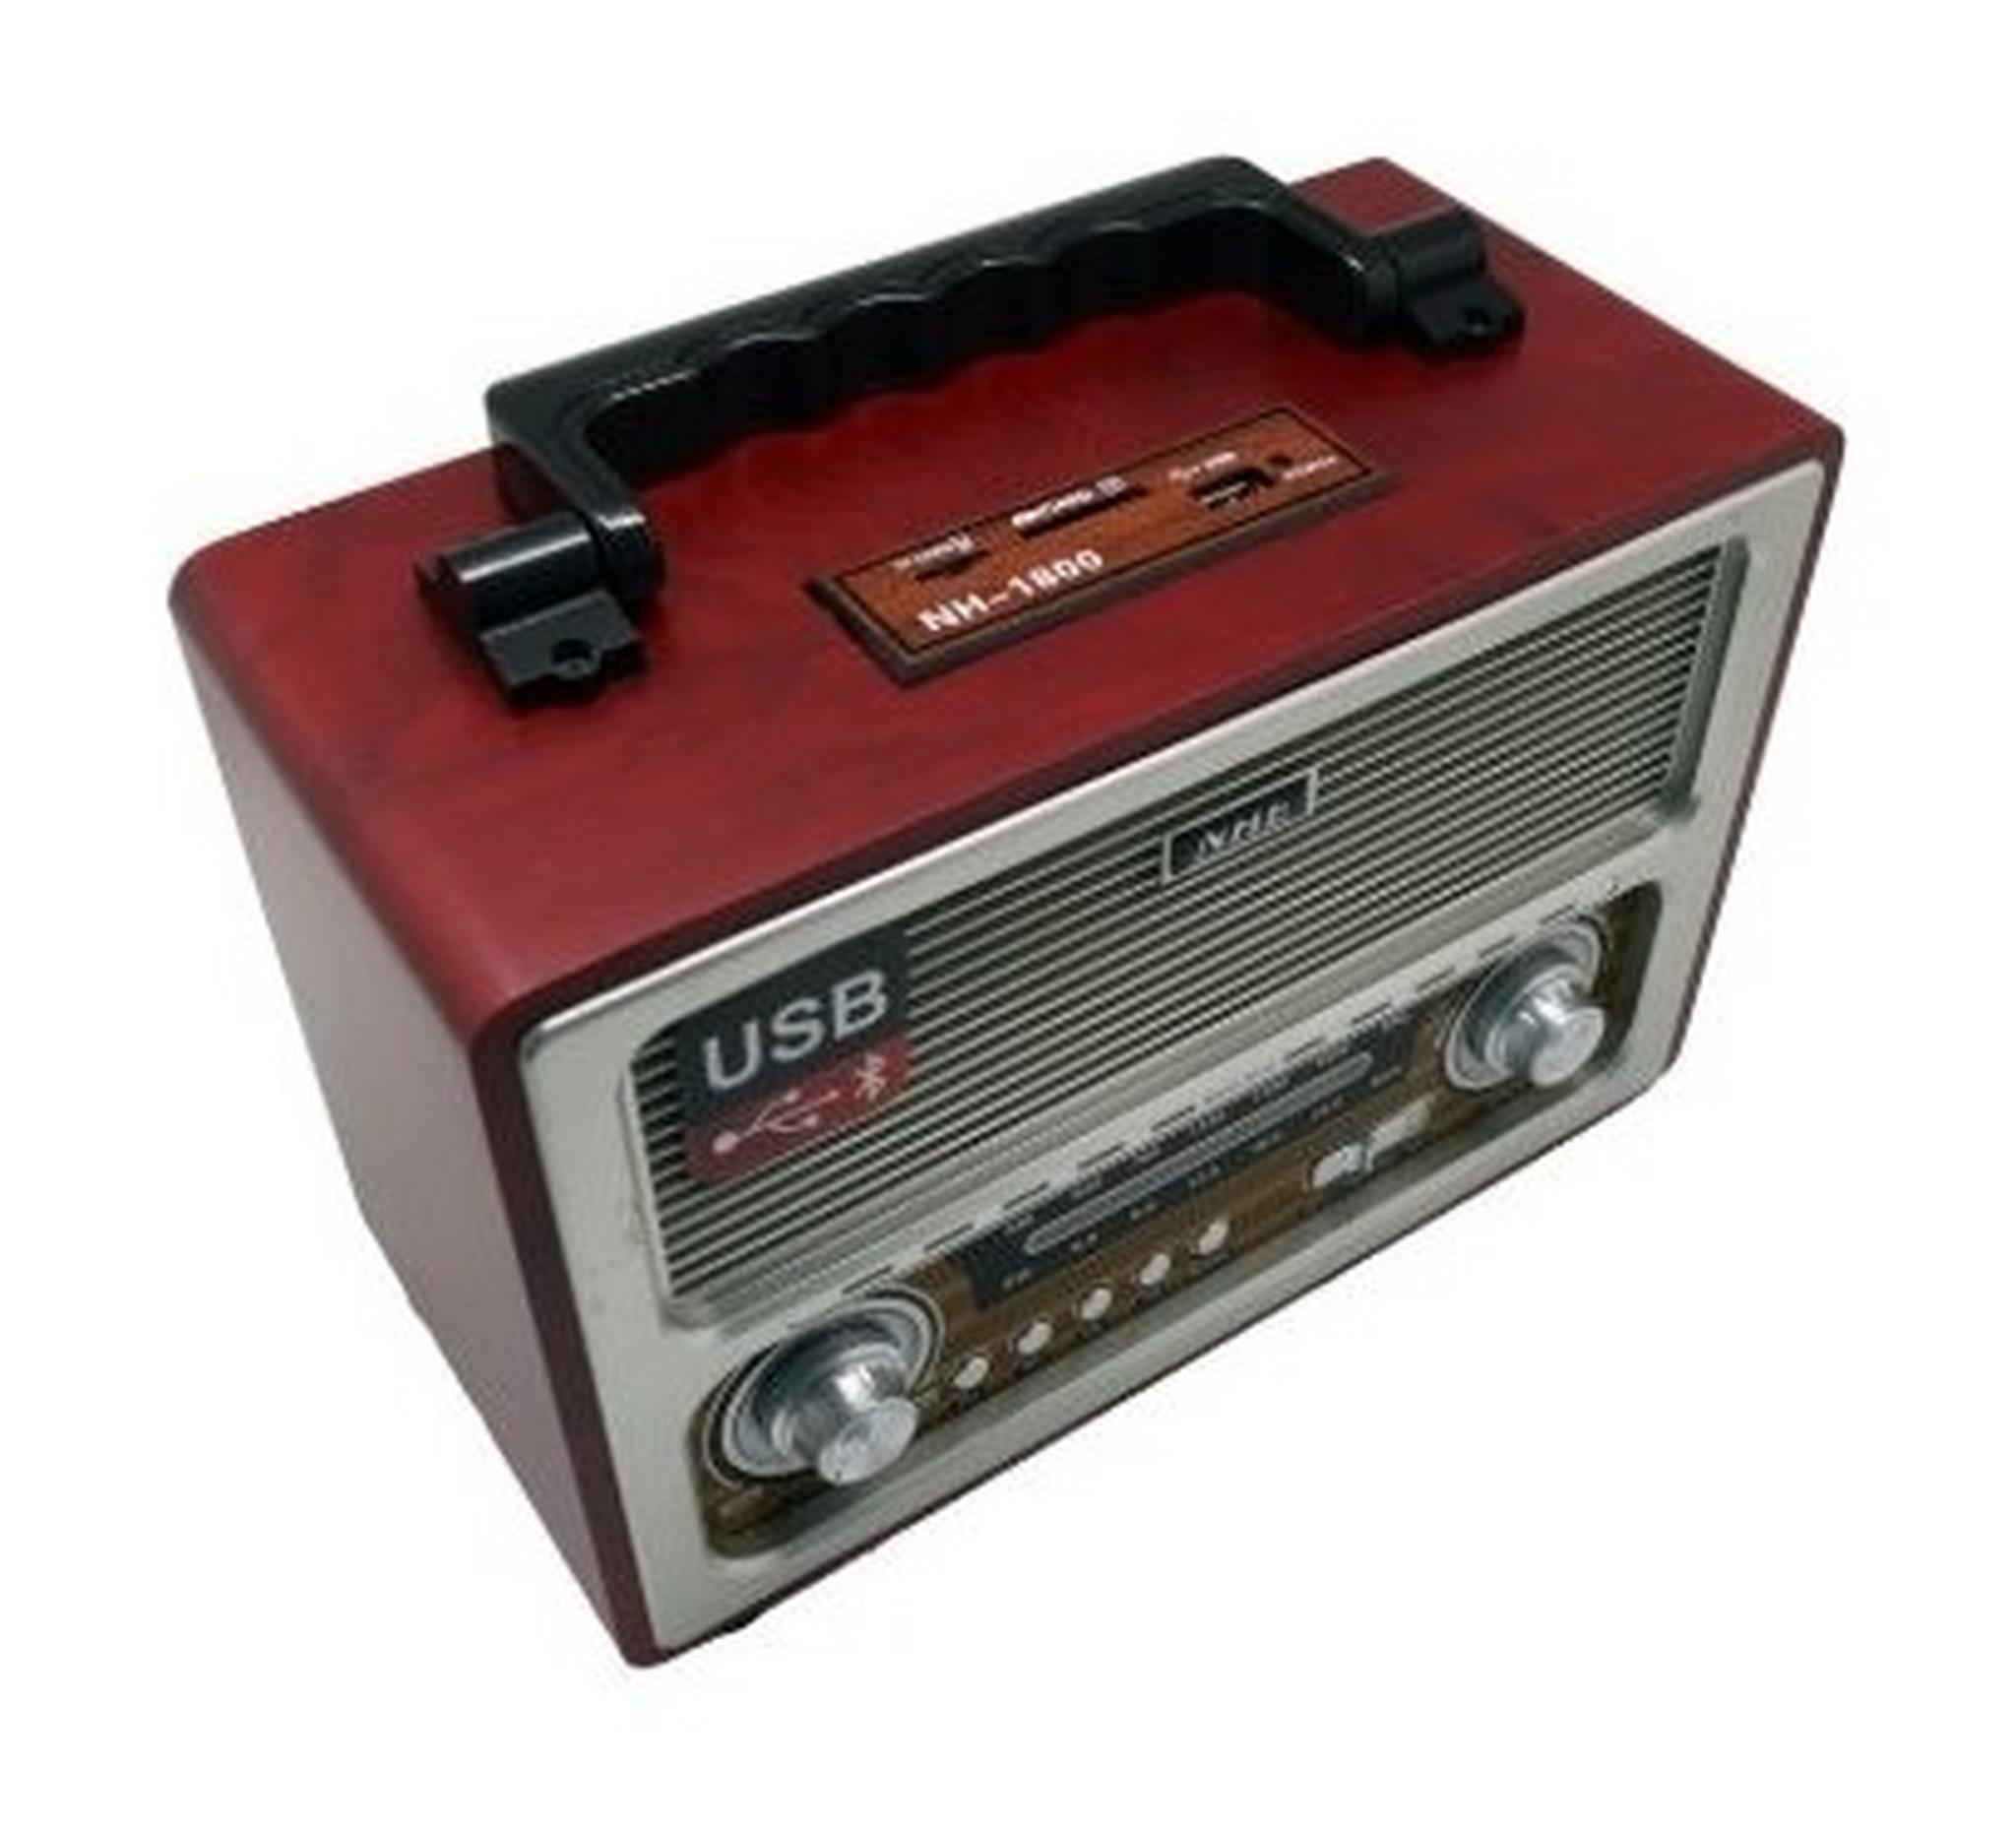 إف إم راديو مع مكبر الصوت أولد ديزاين 200 واط من إن إتش إي (NH -1800) –